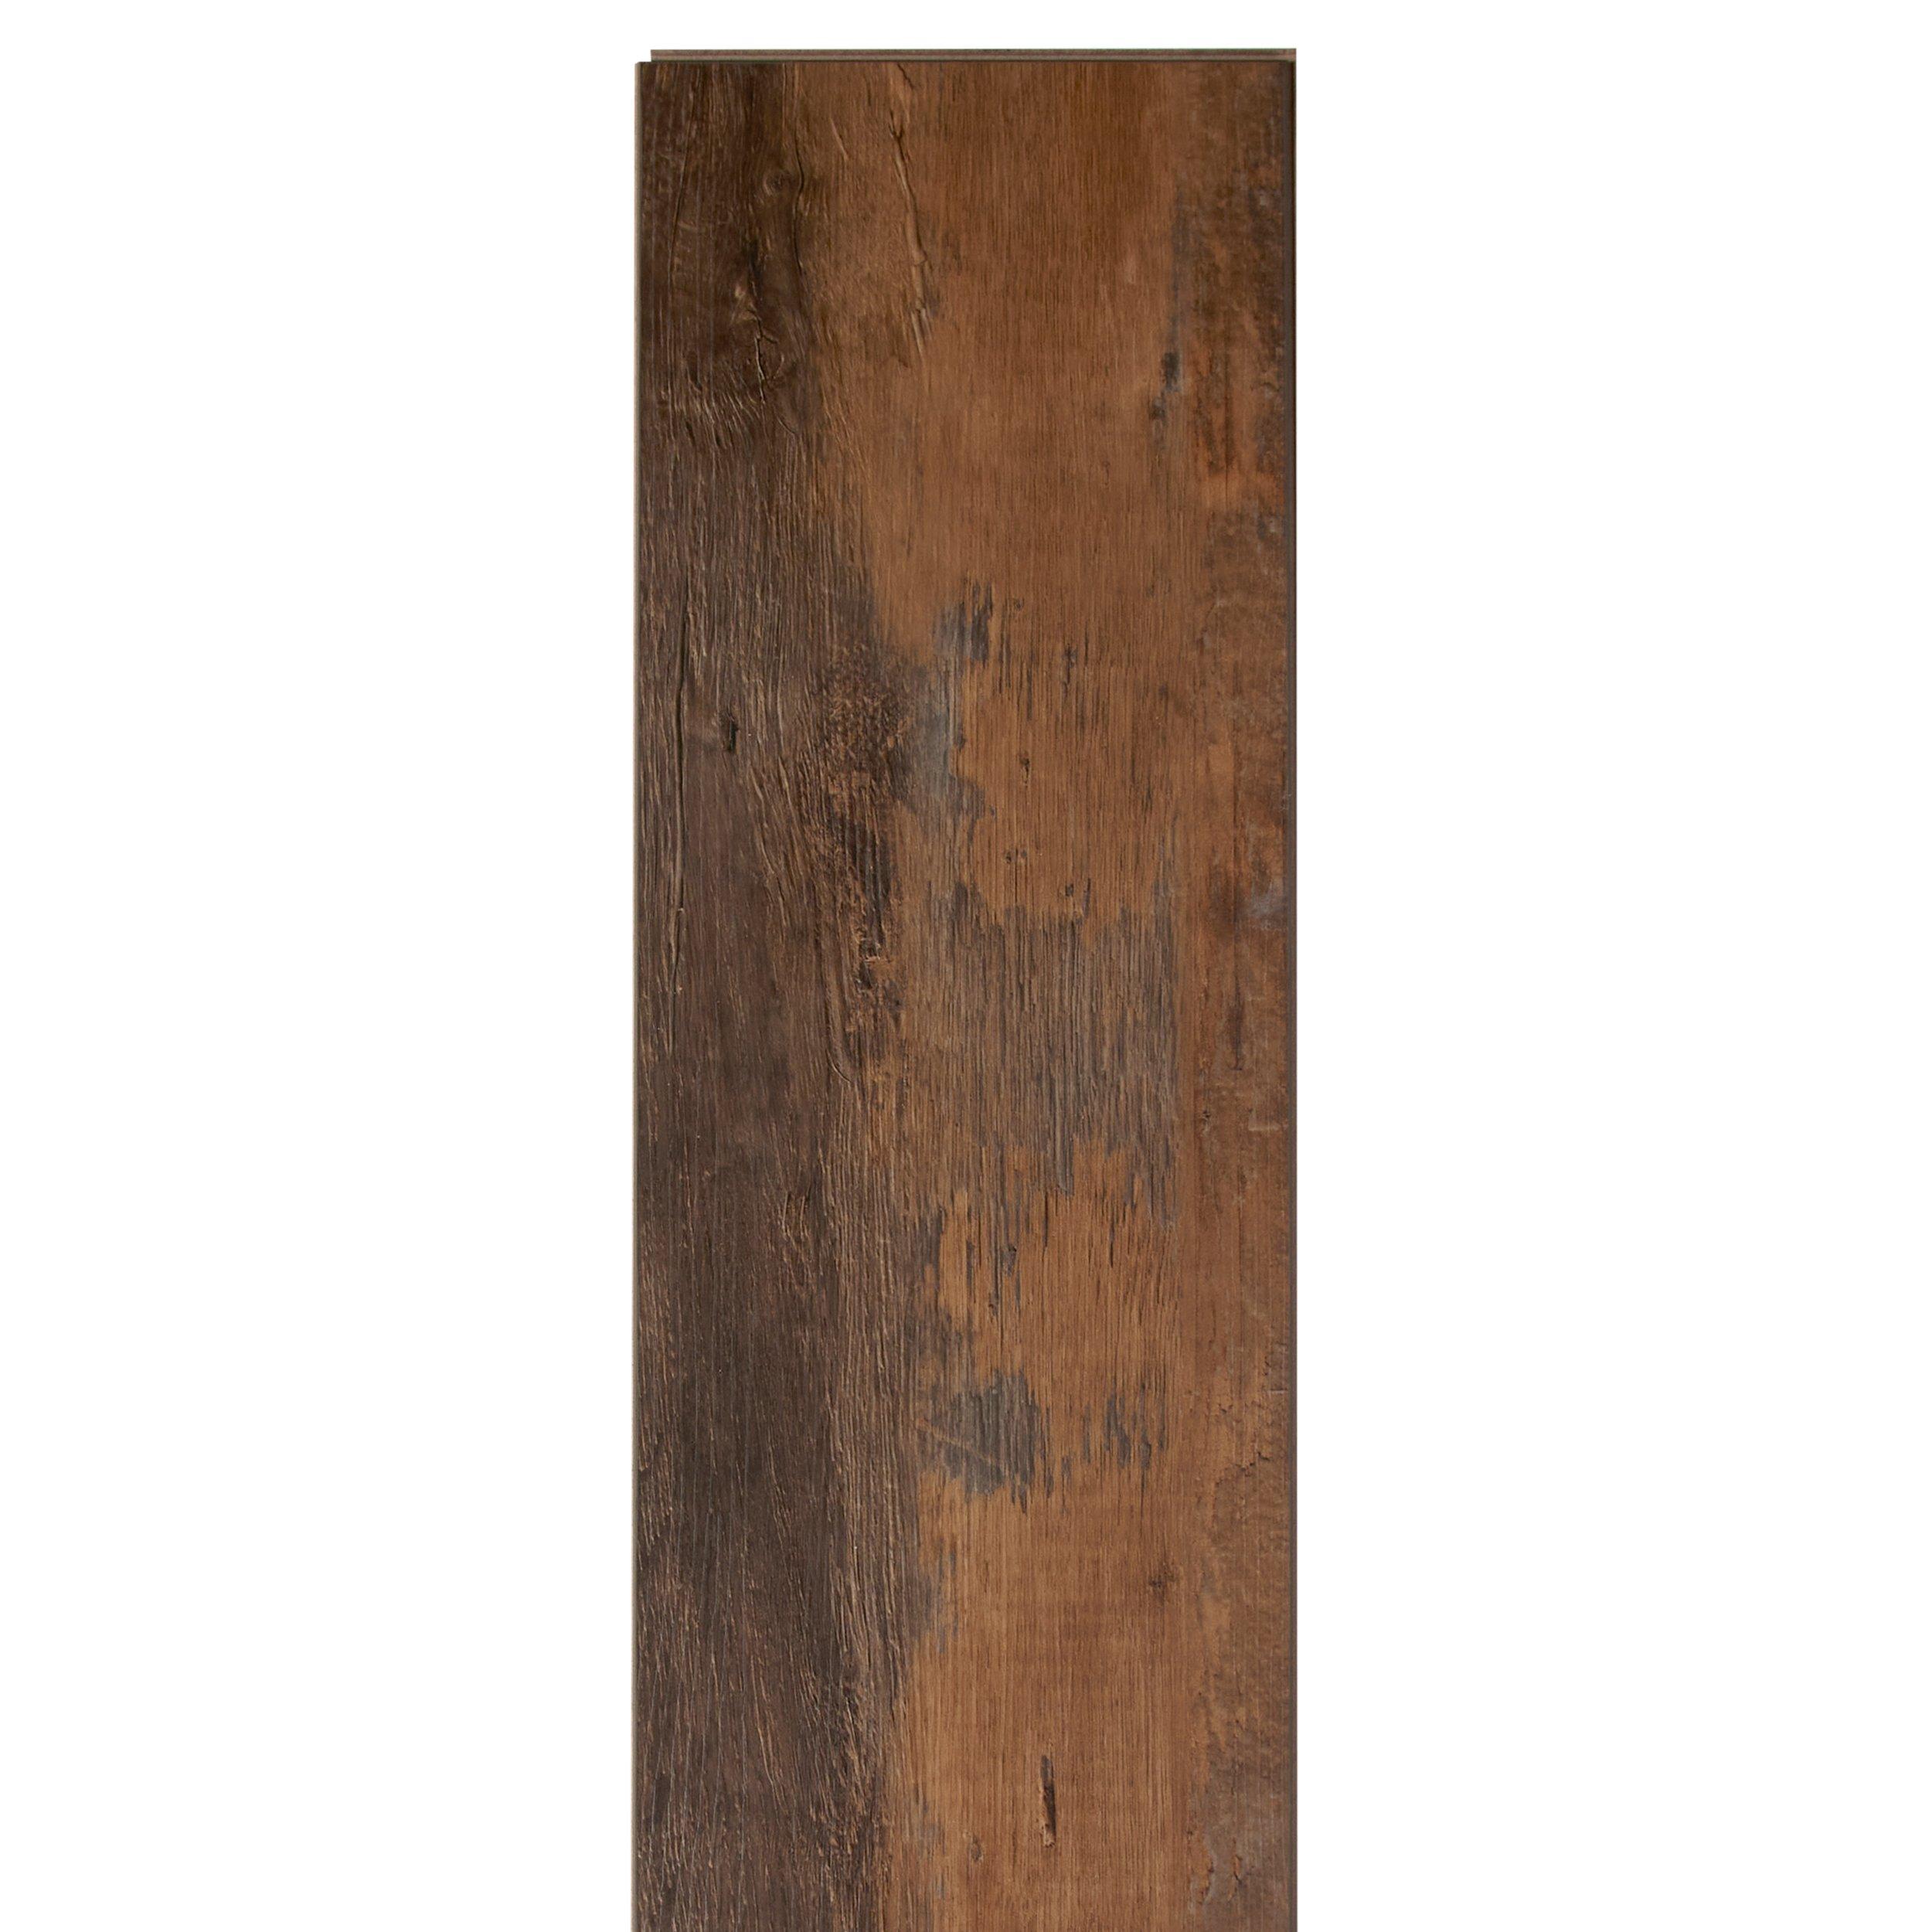 Old Barn Oak Rigid Core Luxury Vinyl Plank - Cork Back